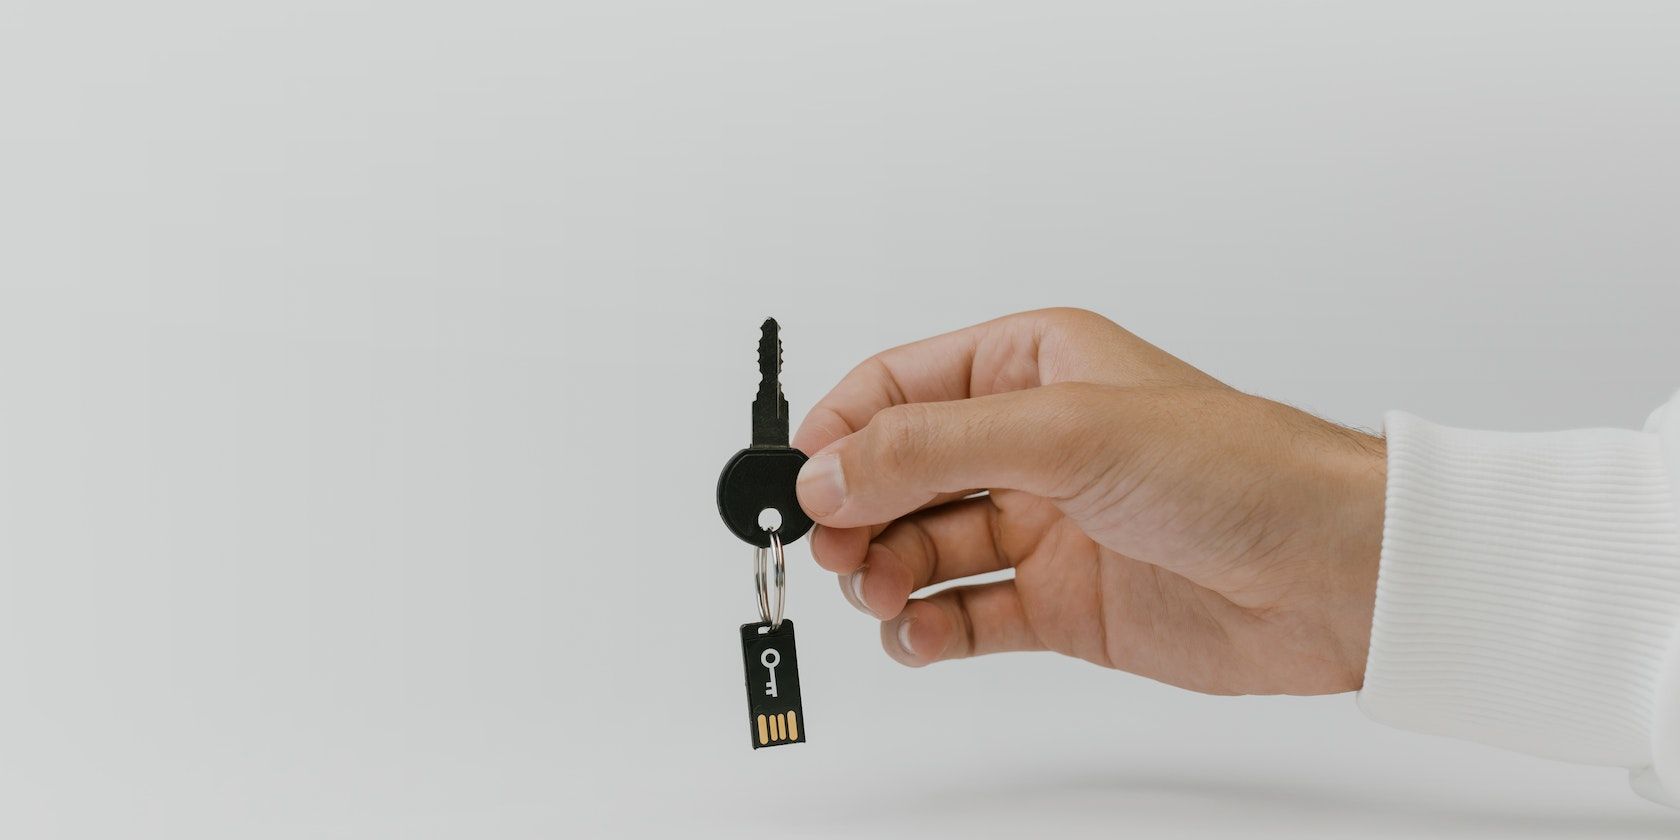 A chip keychain representing digital keys